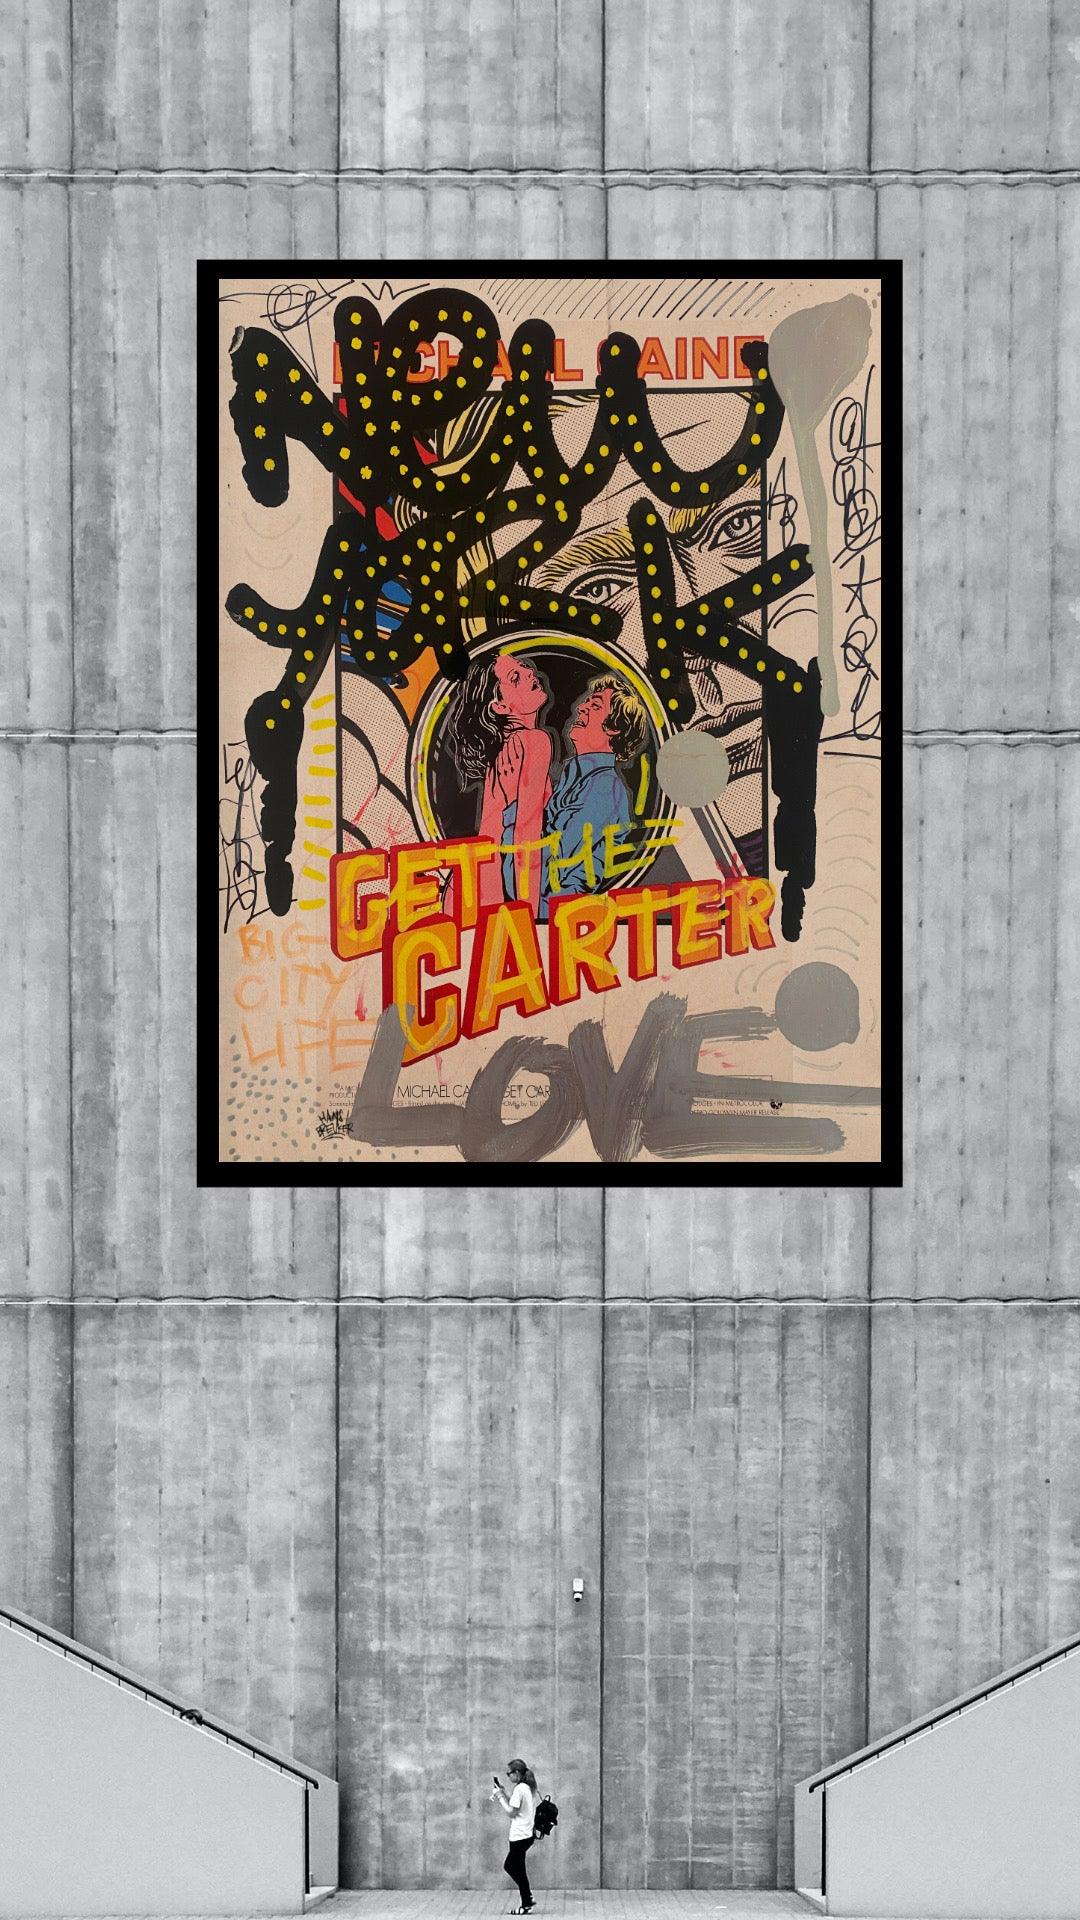 New York get the carter - Hans Breuker